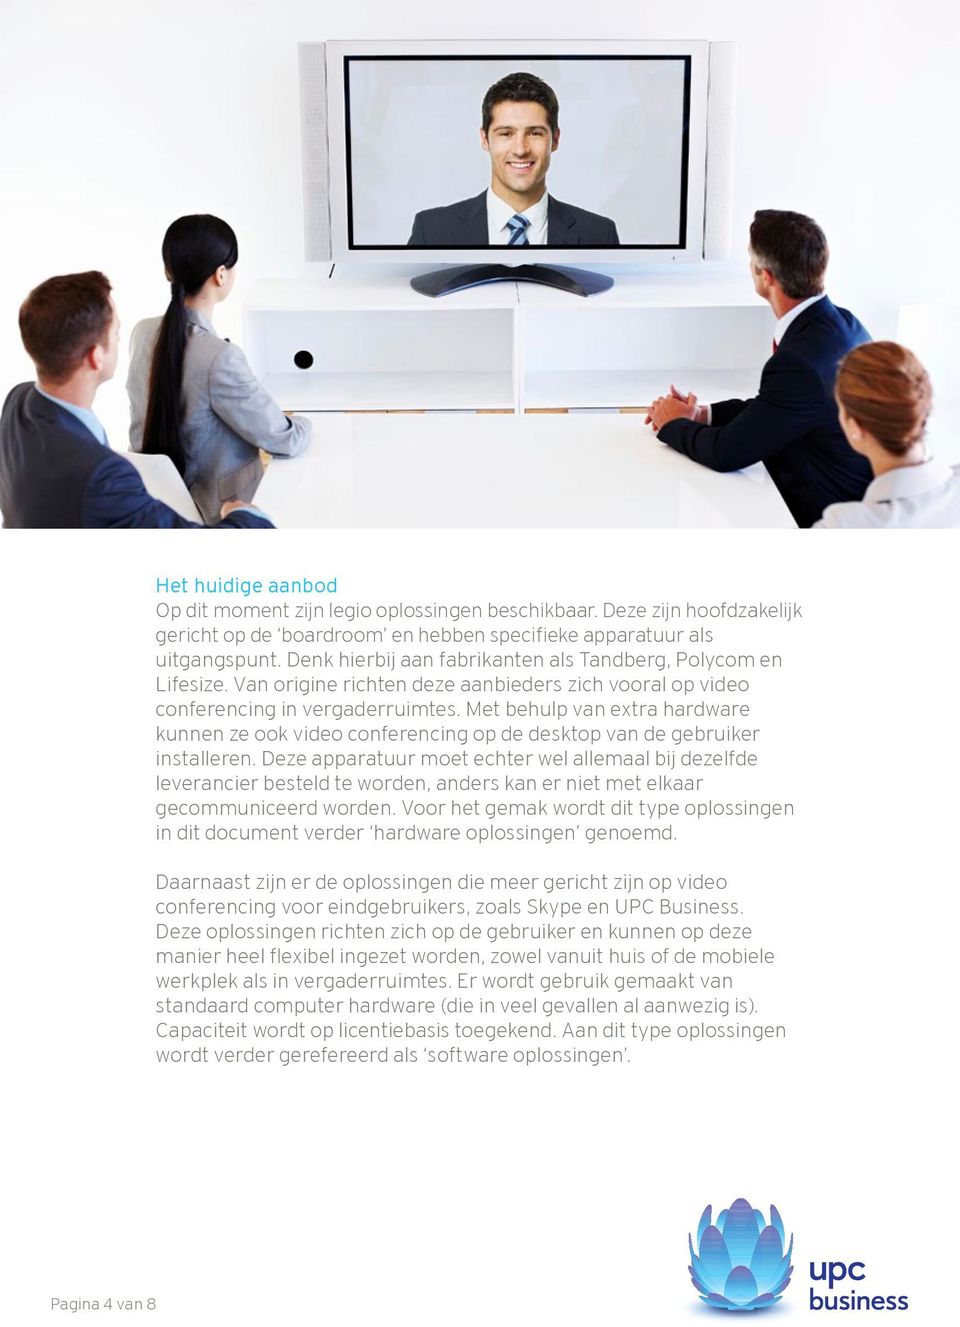 Met behulp van extra hardware kunnen ze ook video conferencing op de desktop van de gebruiker installeren.